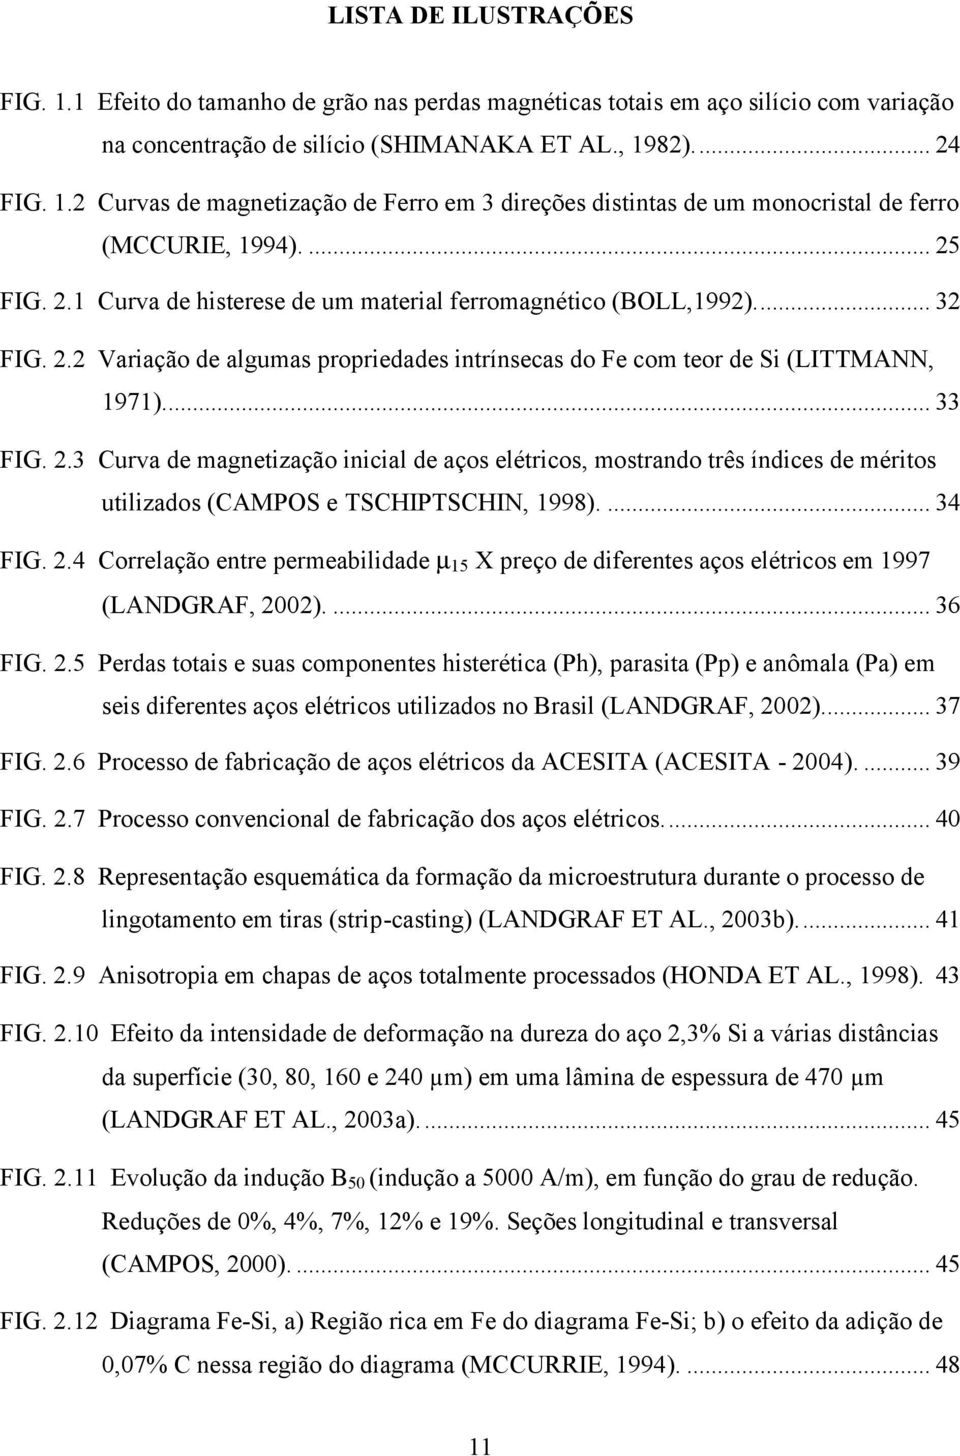 ... 34 FIG. 2.4 Correlação entre permeabilidade µ 15 X preço de diferentes aços elétricos em 1997 (LANDGRAF, 2002).... 36 FIG. 2.5 Perdas totais e suas componentes histerética (Ph), parasita (Pp) e anômala (Pa) em seis diferentes aços elétricos utilizados no Brasil (LANDGRAF, 2002).